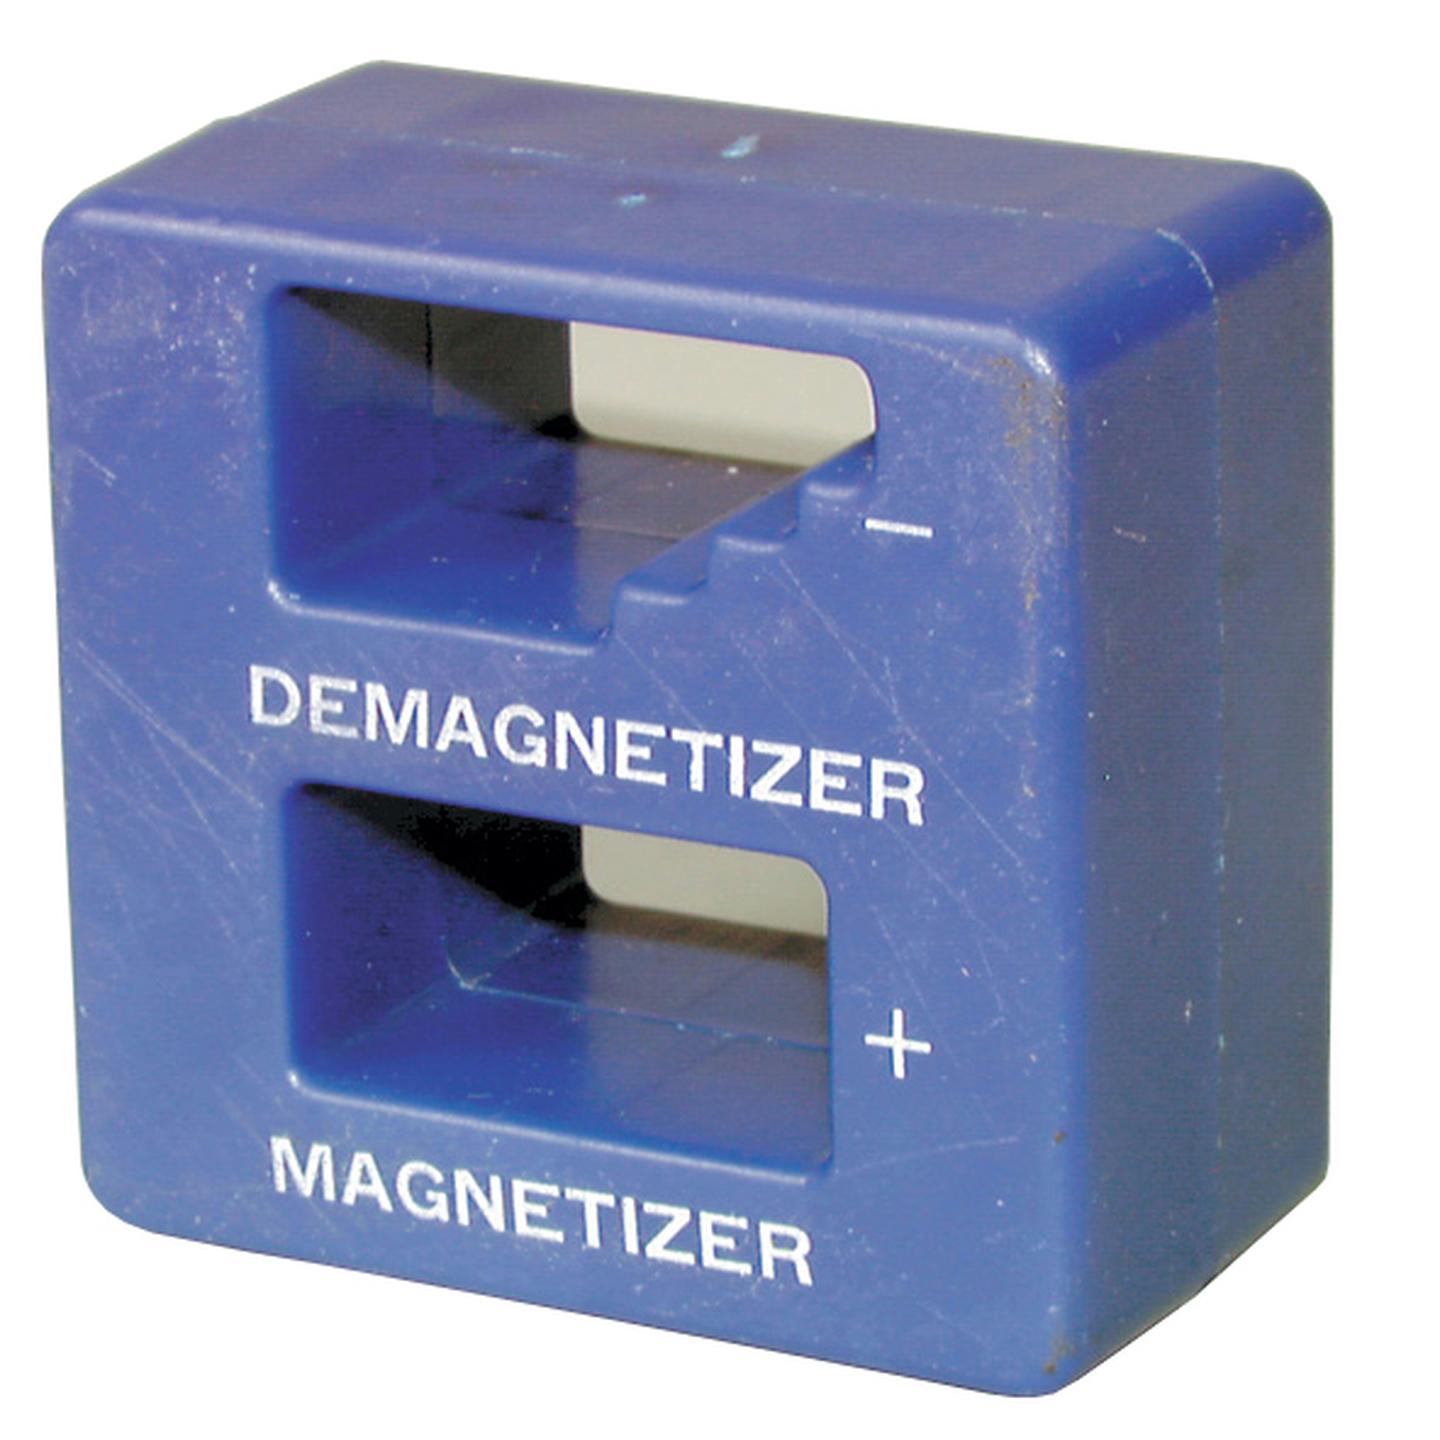 Tool Magnetiser / Demagnetiser